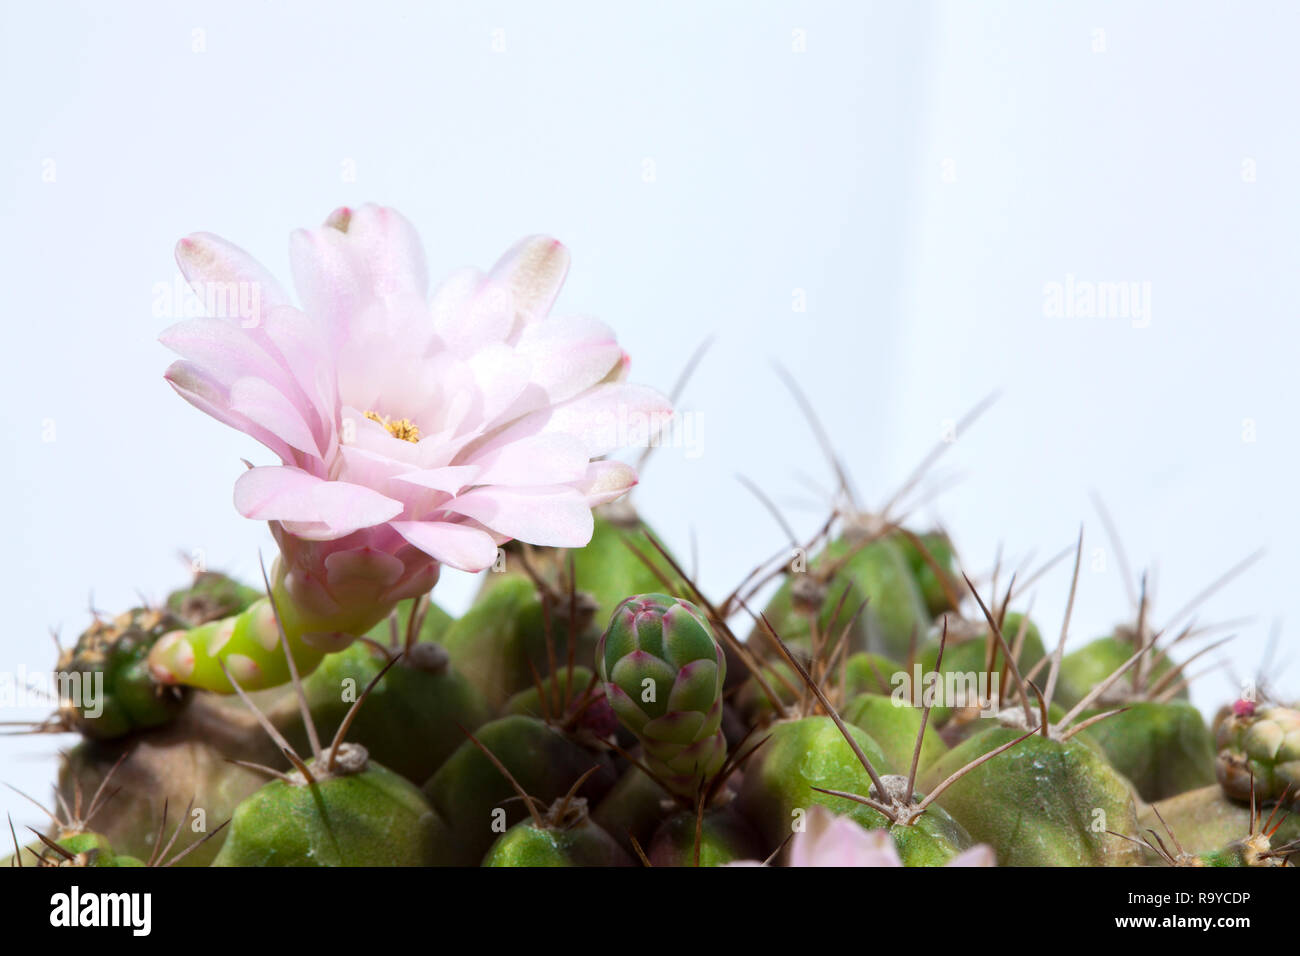 Rosa Kaktusblüte auf Weiß, neben der Rosa cactus Flower blühen auf der grünen Stiel, aufgeklebt auf einem Kaktus. Stockfoto